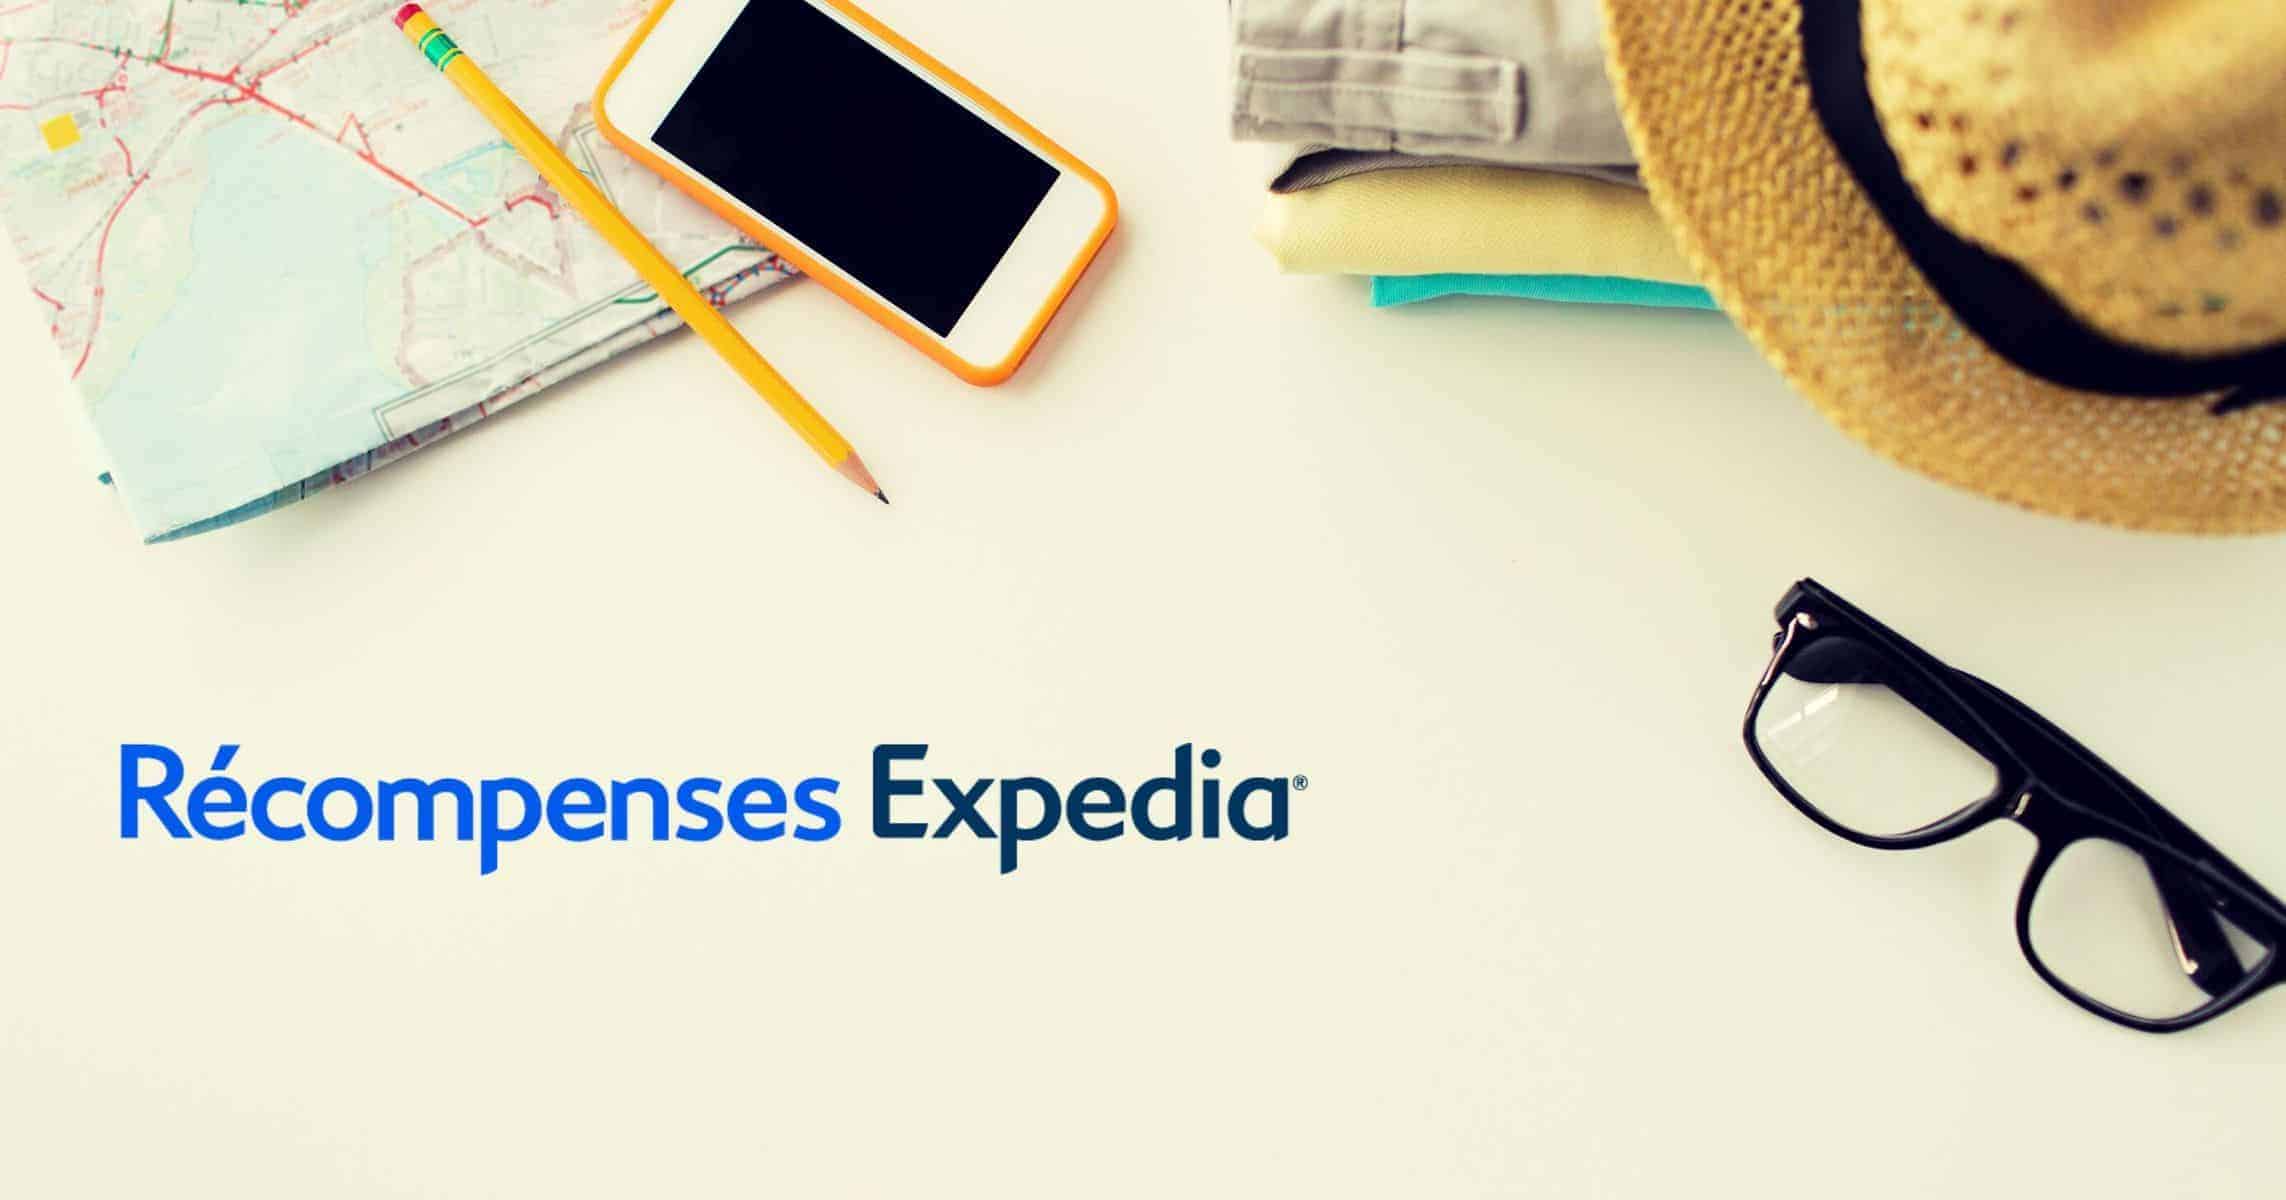 Recompenses Expedia Featured